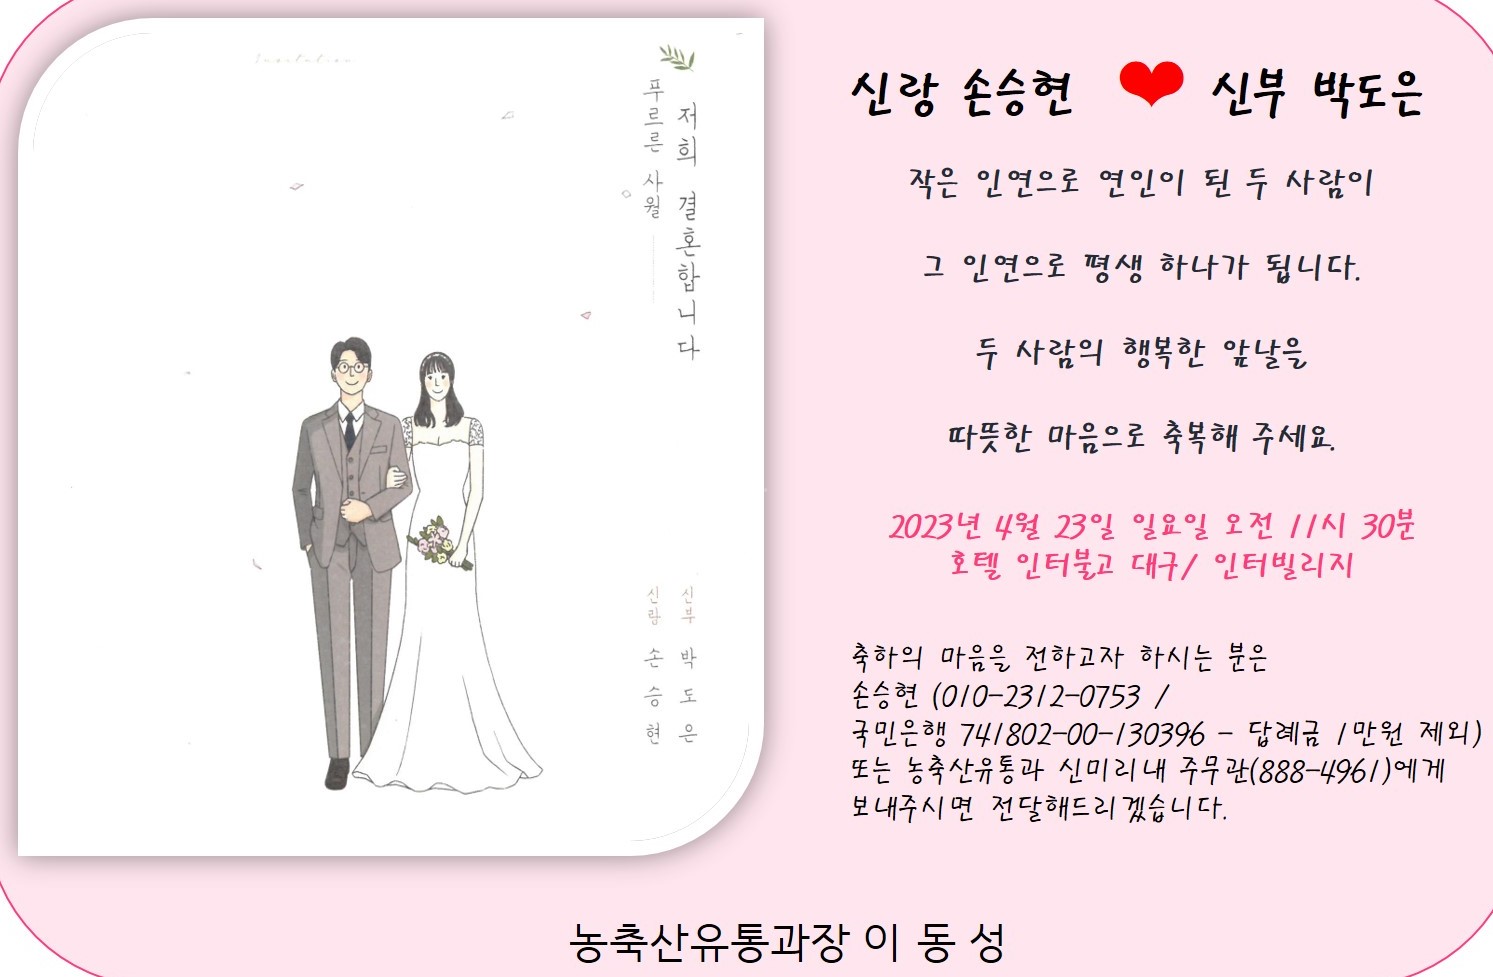 [결혼] ♥ 농축산유통과 손승현주무관 결혼 알림 ♥